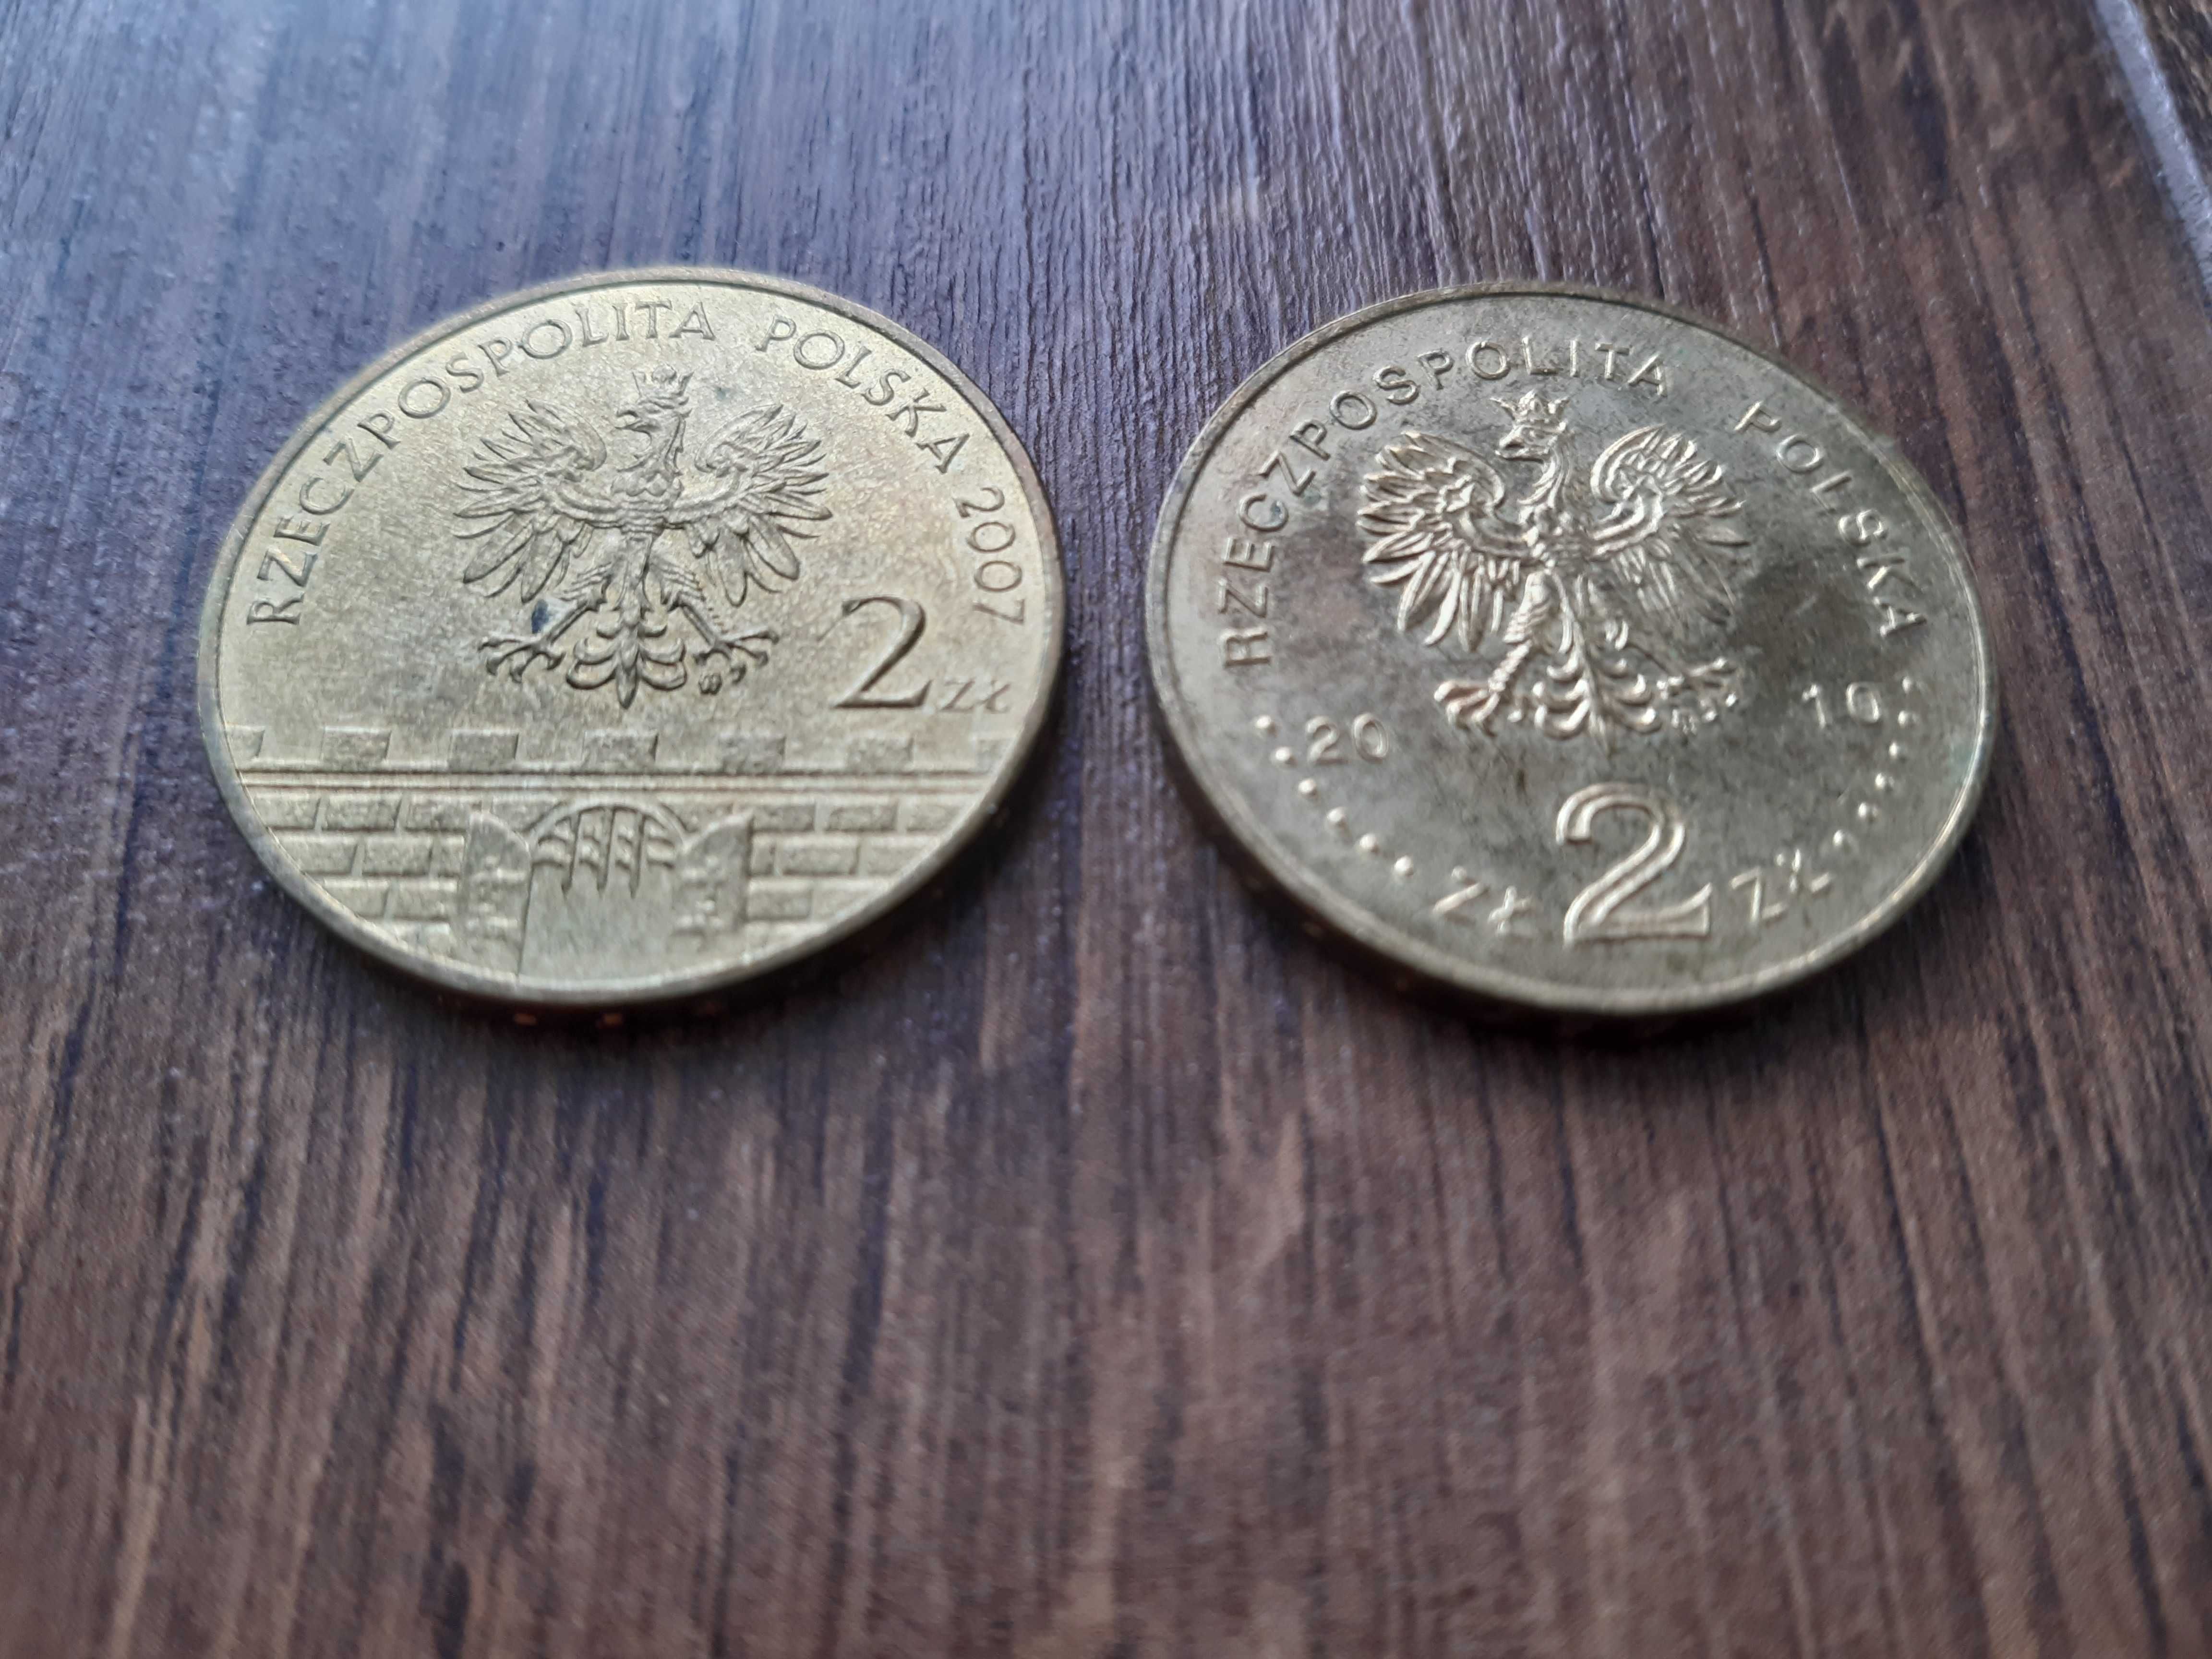 Monety 2 zł złote Brzeg i Miechów 2007 i 2010 r.